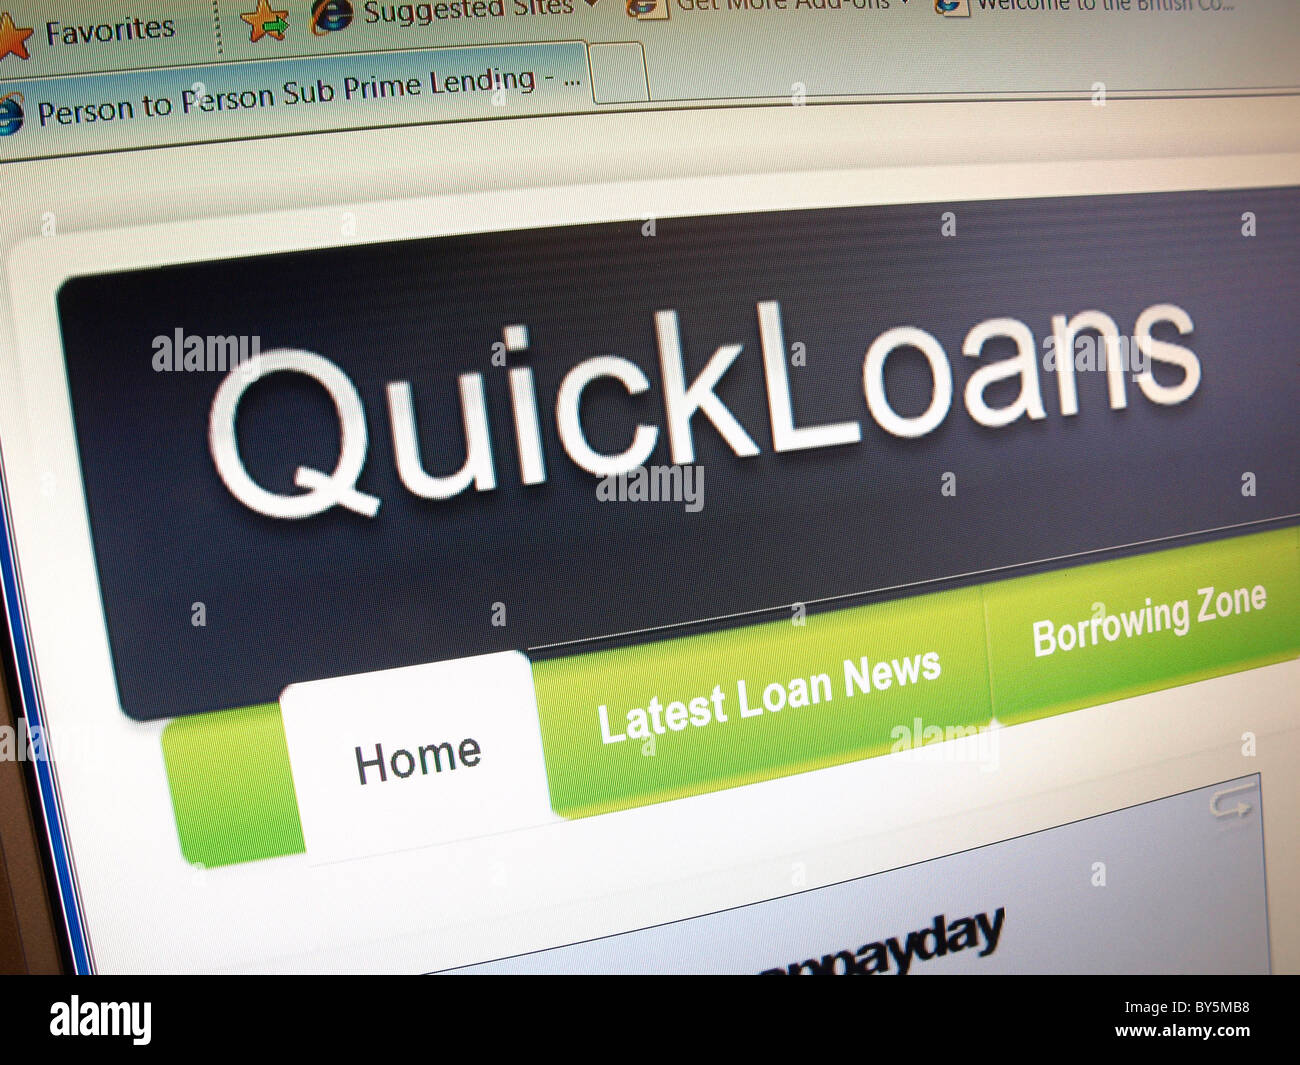 QuickLoans "persona a persona sub-prime lending' è un online payday loan service che gli oneri molto elevati tassi di interesse Foto Stock